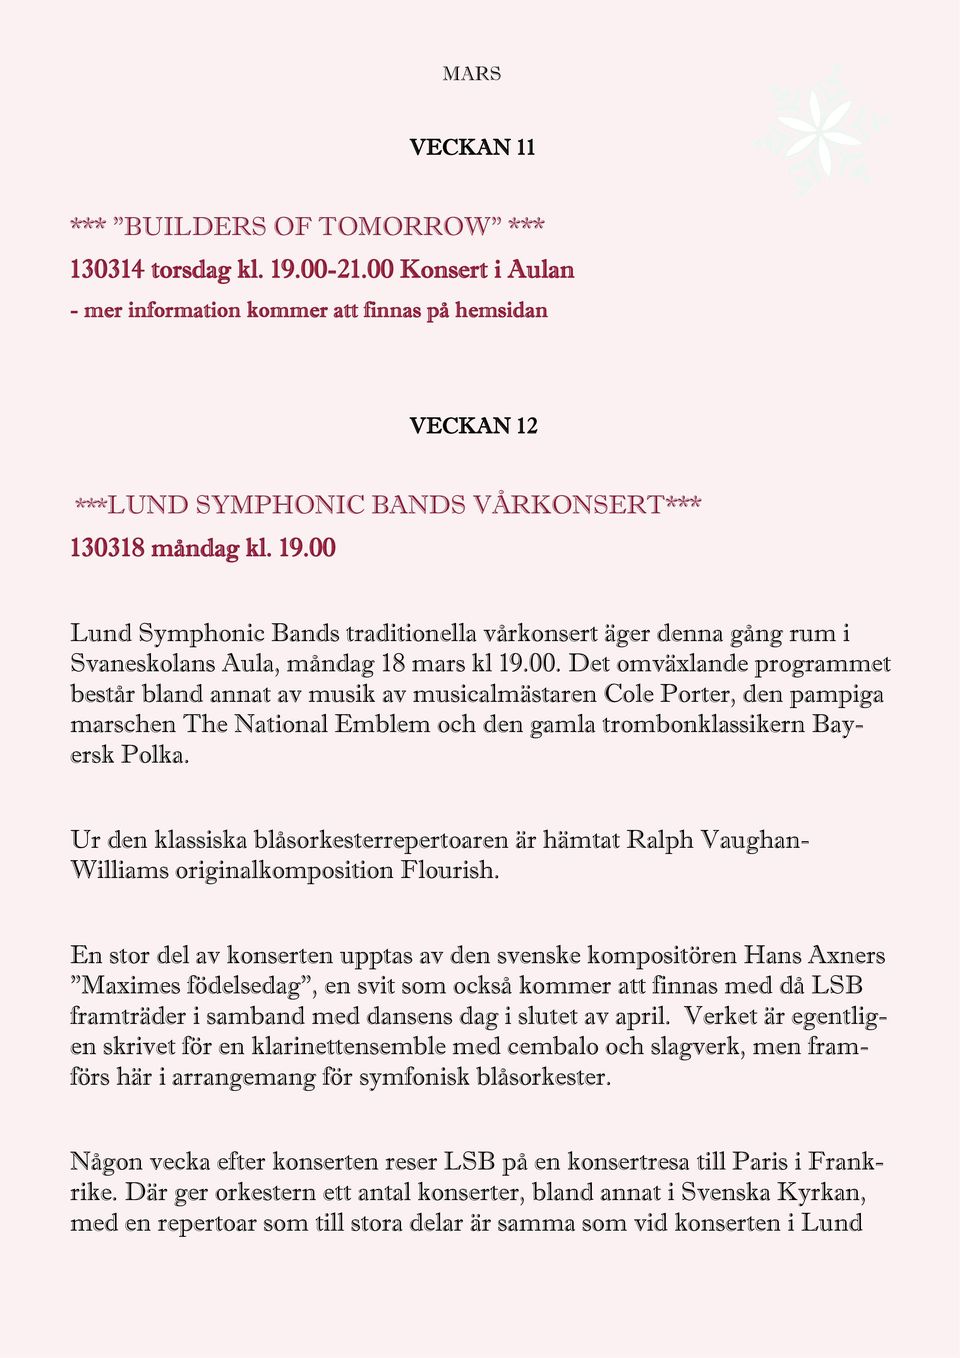 00 Lund Symphonic Bands traditionella vårkonsert äger denna gång rum i Svaneskolans Aula, måndag 18 mars kl 19.00. Det omväxlande programmet består bland annat av musik av musicalmästaren Cole Porter, den pampiga marschen The National Emblem och den gamla trombonklassikern Bayersk Polka.